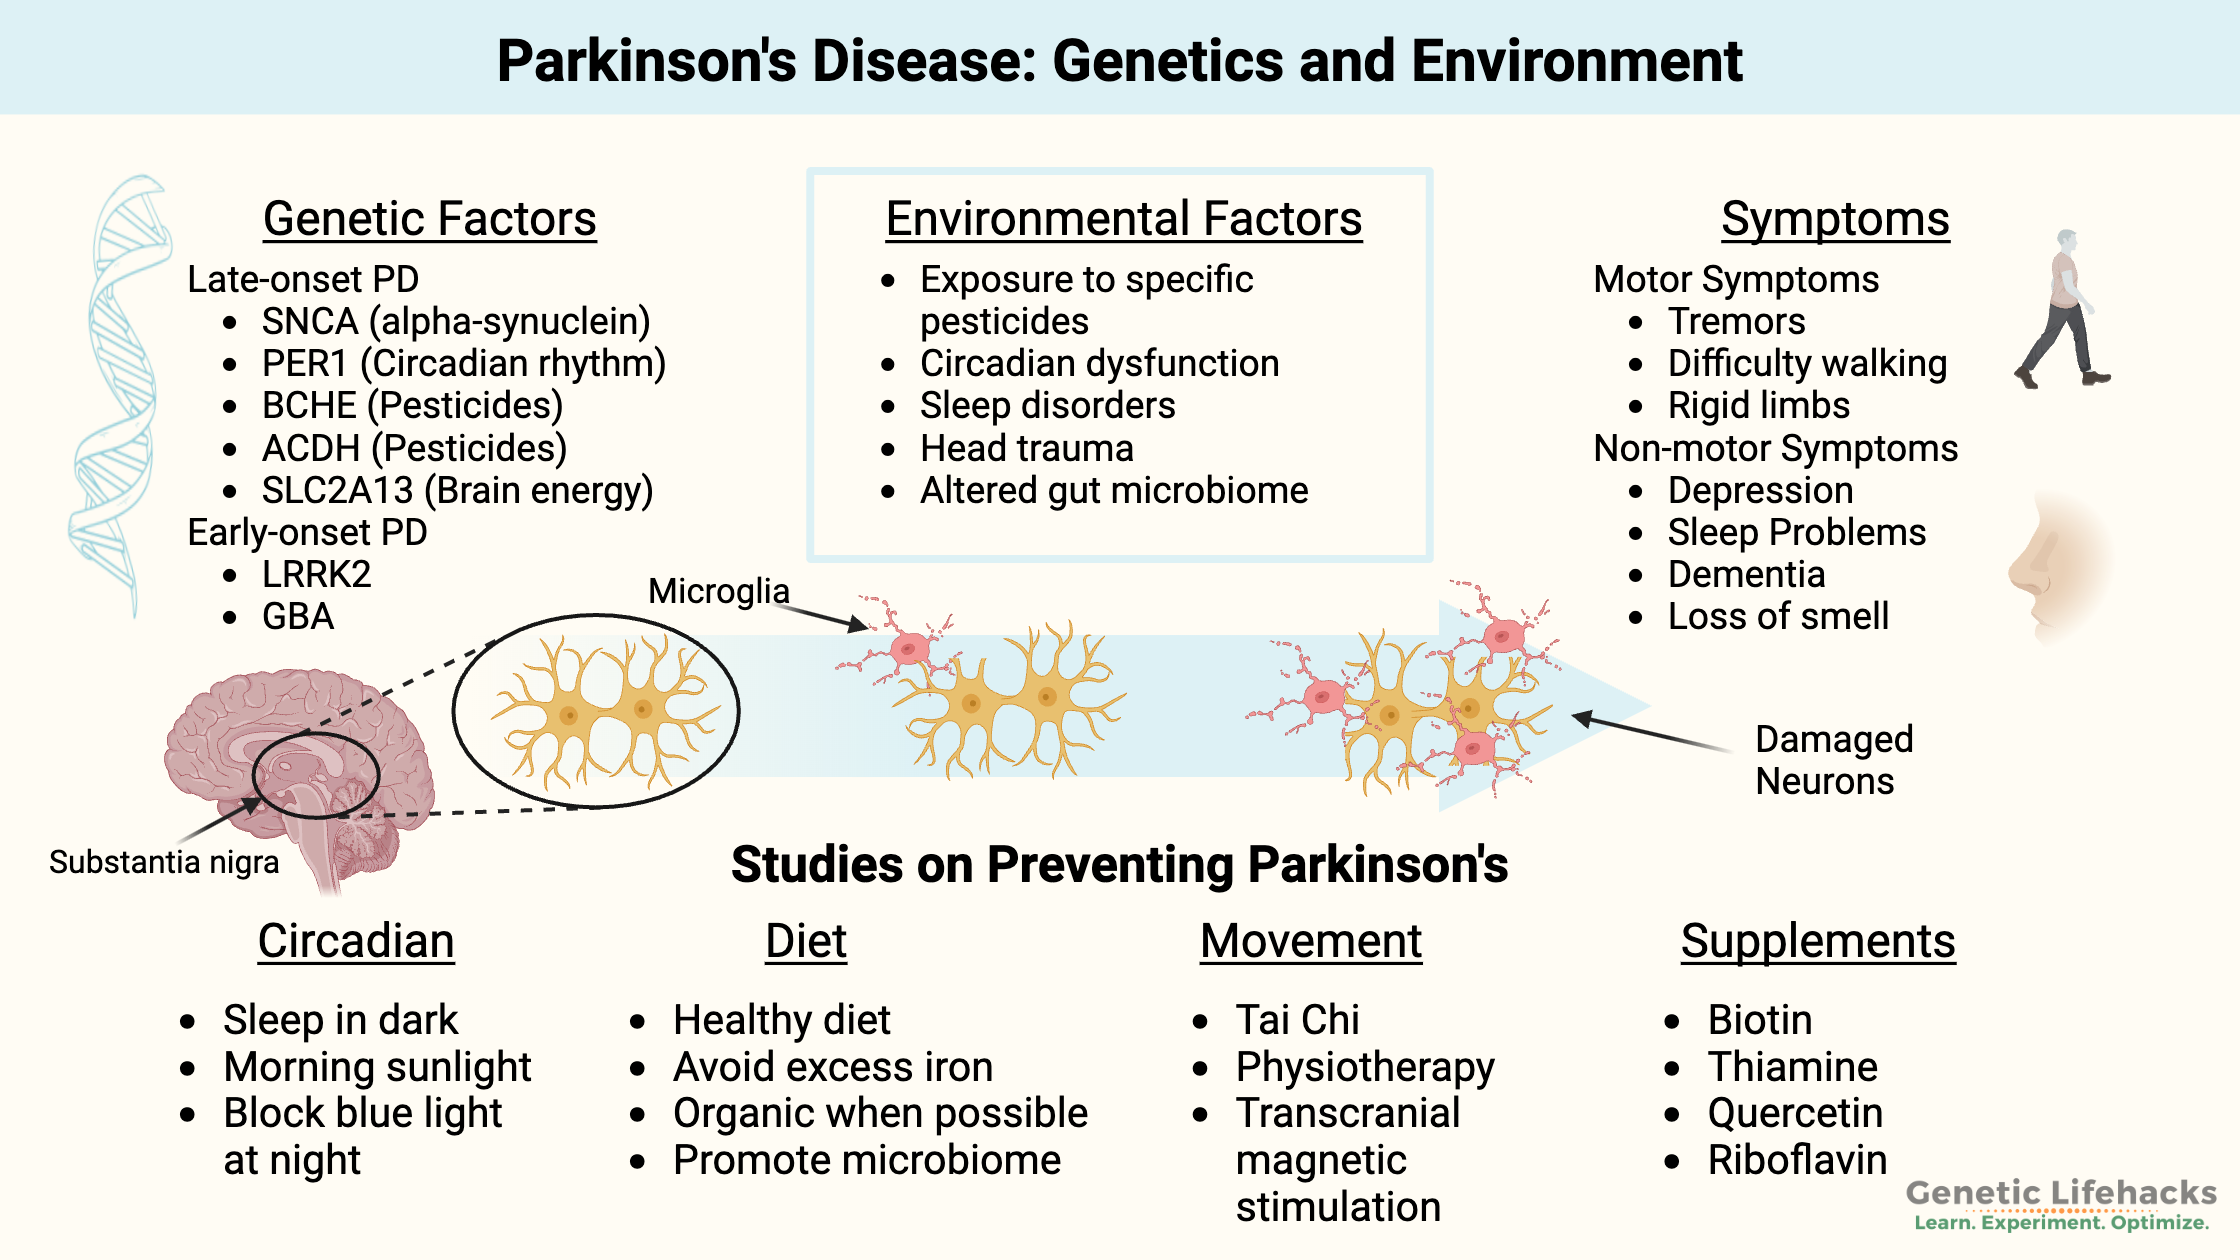 Parkinson's Disease genetic factors and environmental factors, Parkinson's symptoms